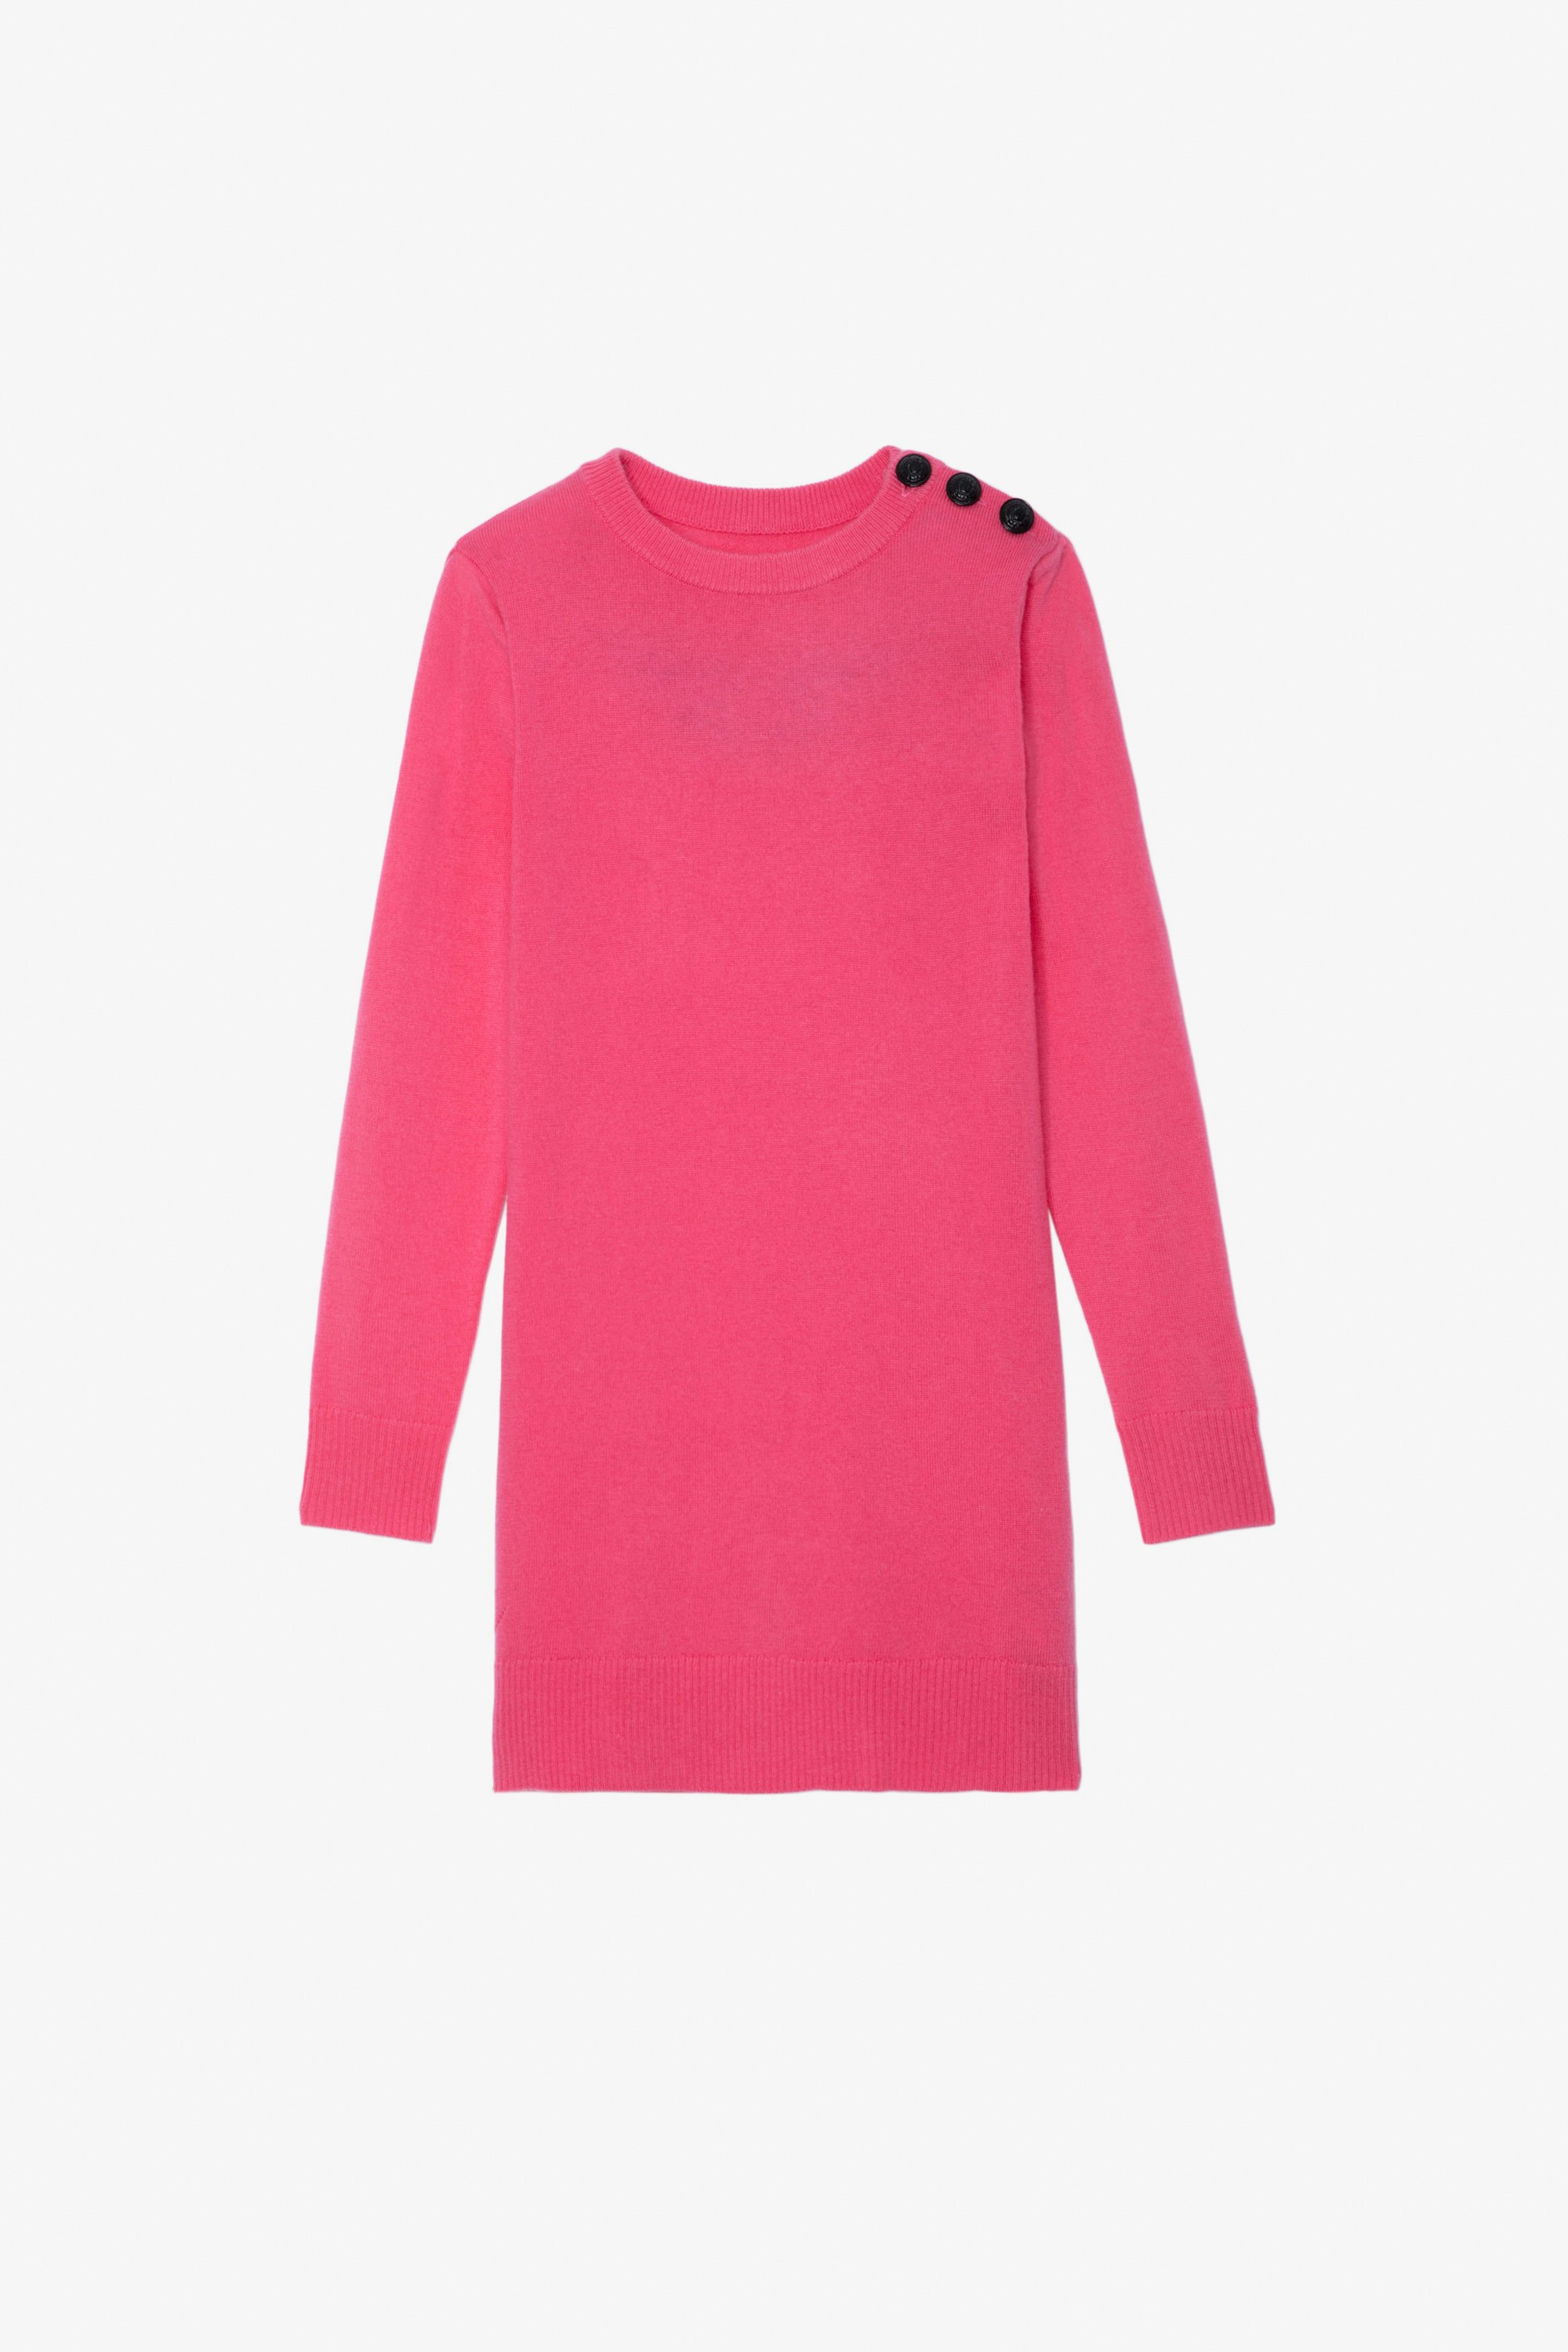 Kleid Harlow für Mädchen - Rosafarbenes Strickkleid mit Knöpfen und aufgestickten Flügeln auf dem Rücken für Mädchen.